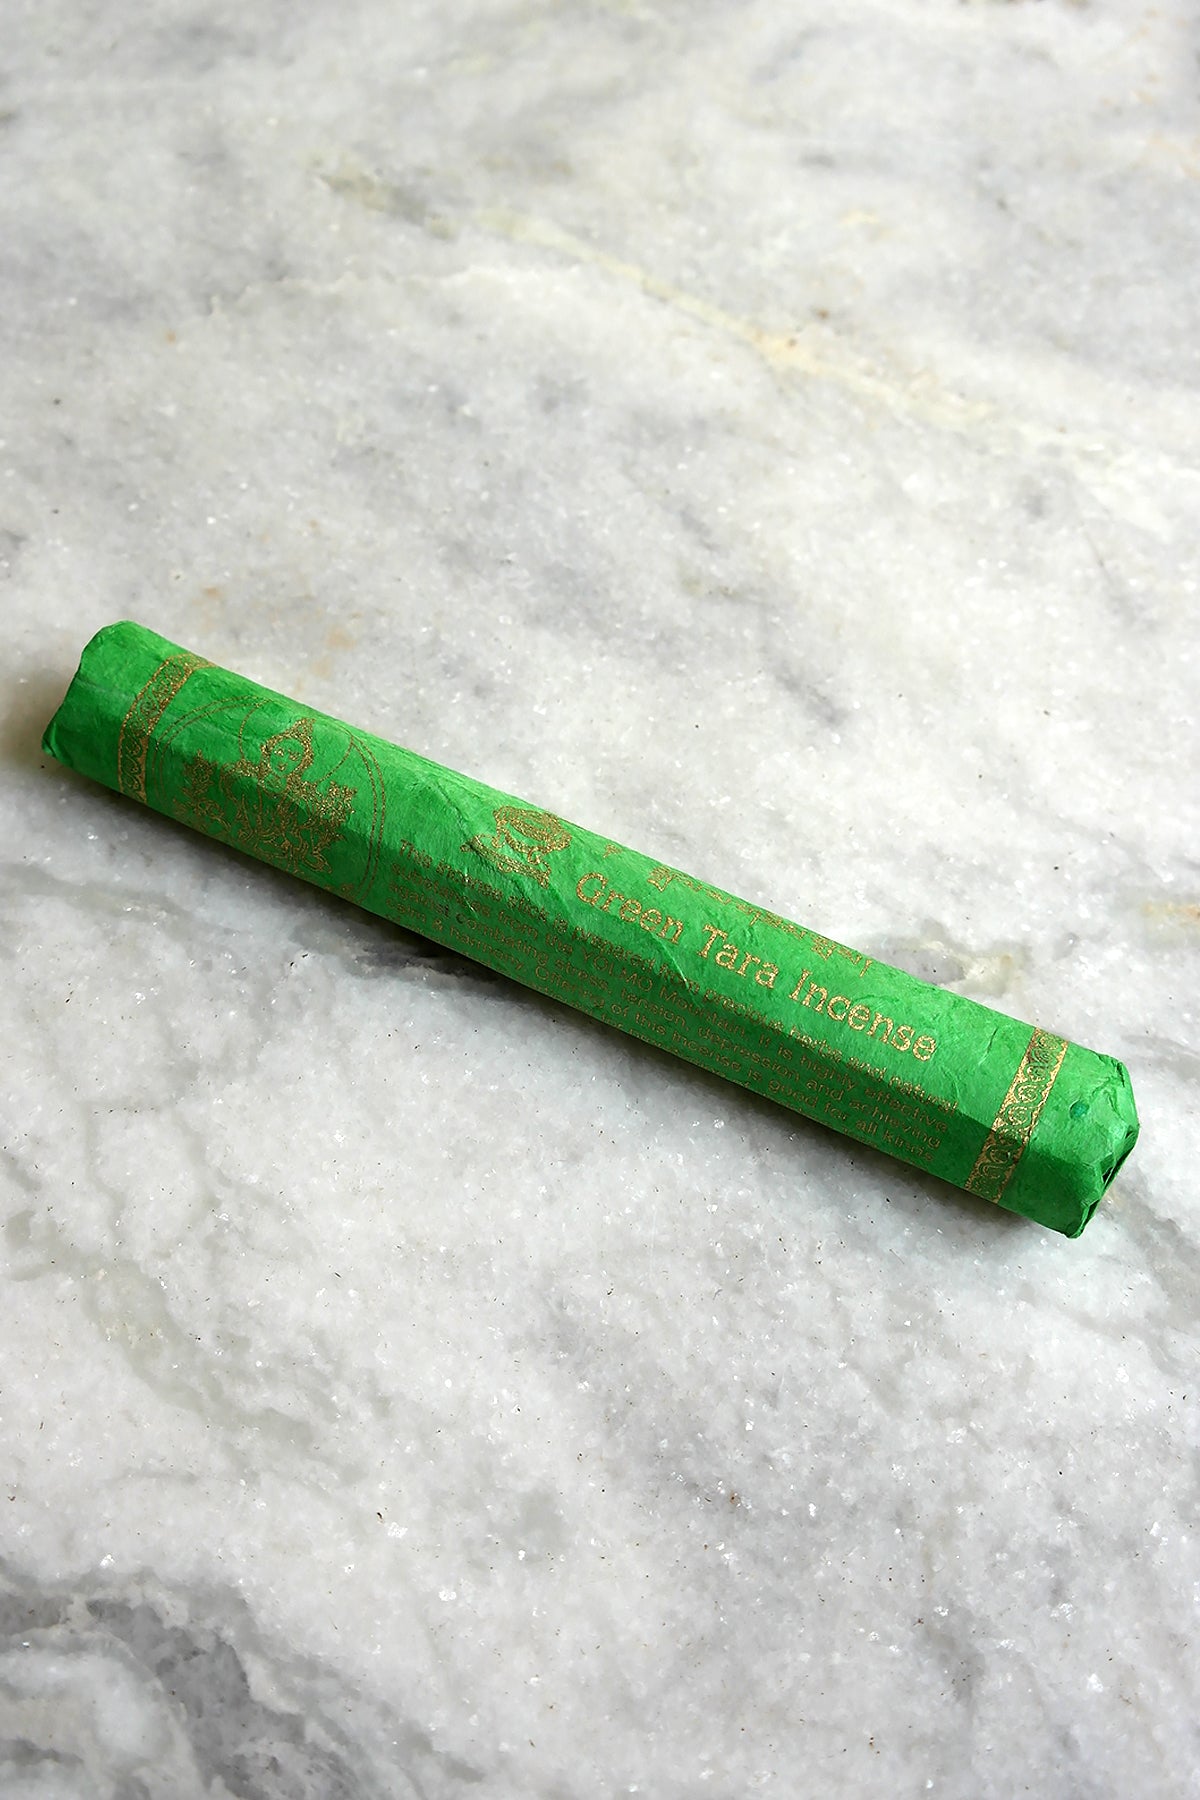 High Quality Himalayan Green Tara Incense Sticks, set of 3 - Vajracrafts